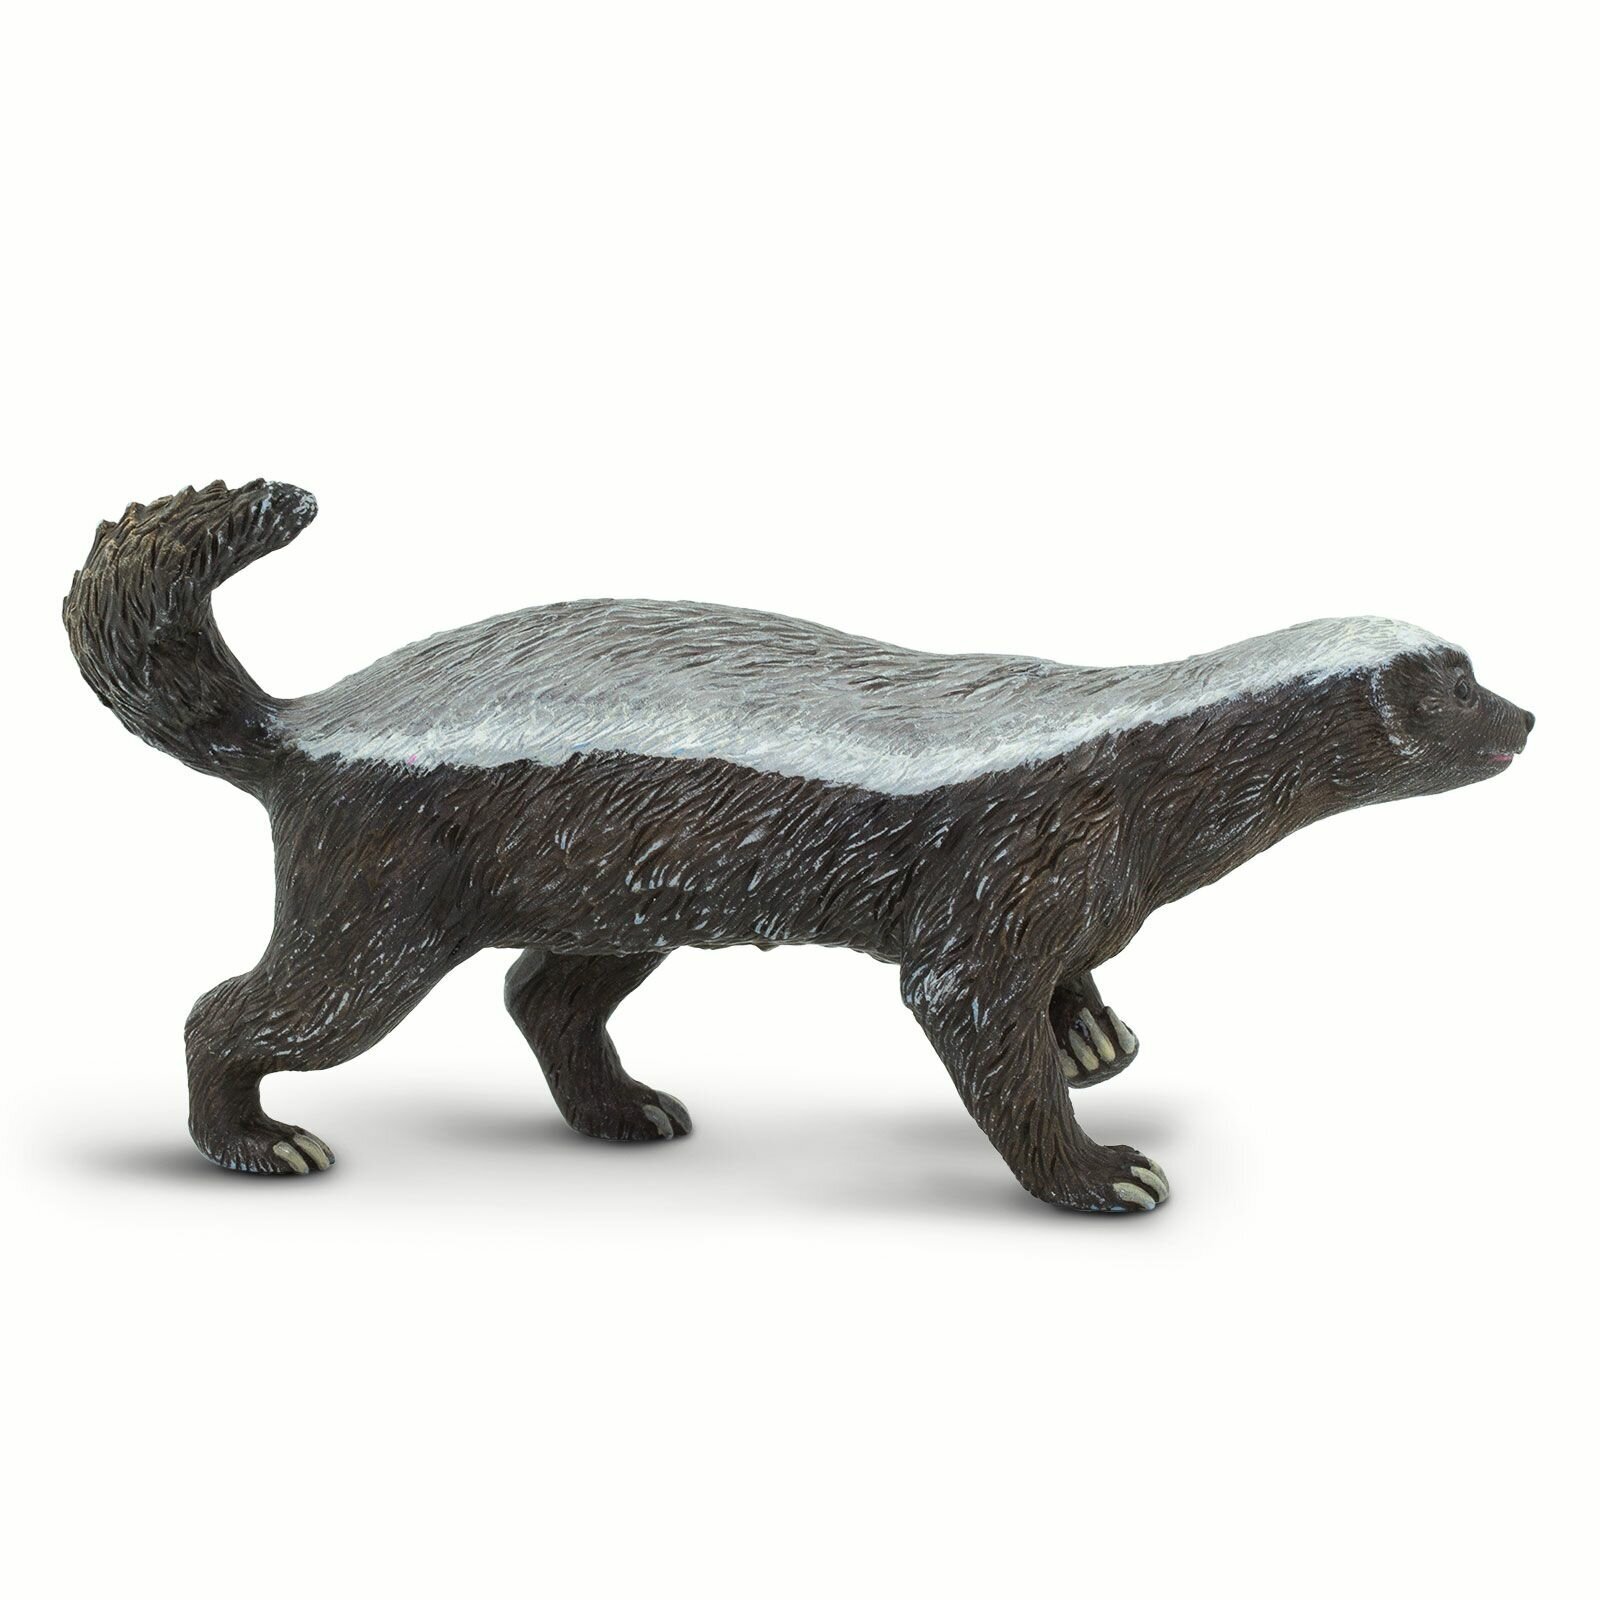 Фигурка животного Safari Ltd Медоед (лысый барсук), для детей, игрушка коллекционная, 100272